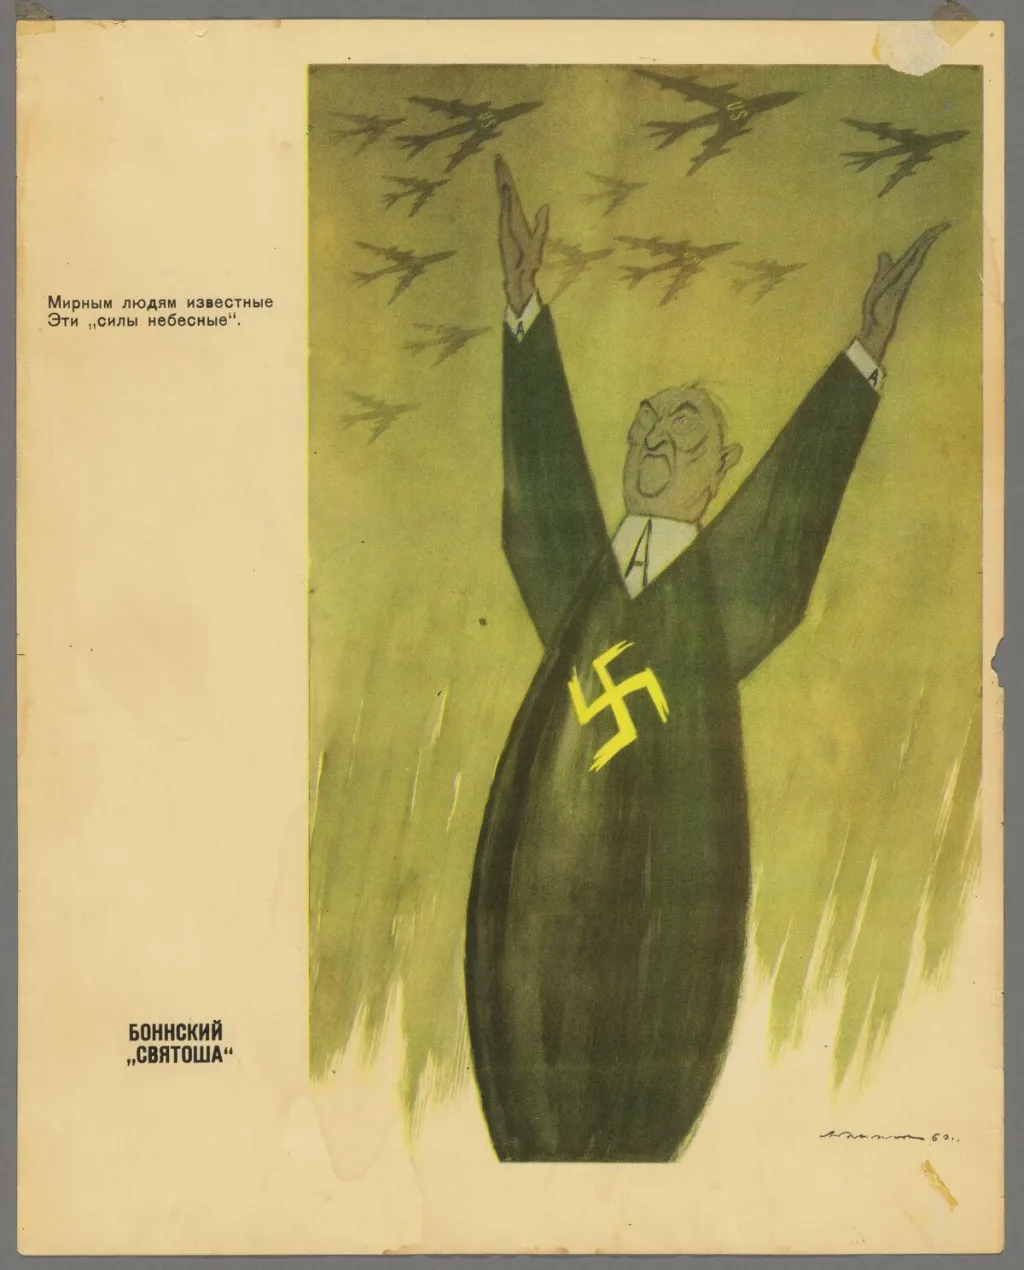 Sovětský režim neměl rád německého kancléře Konrada Adenauera - tento plakát ho zobrazuje jako skrytého nacistu